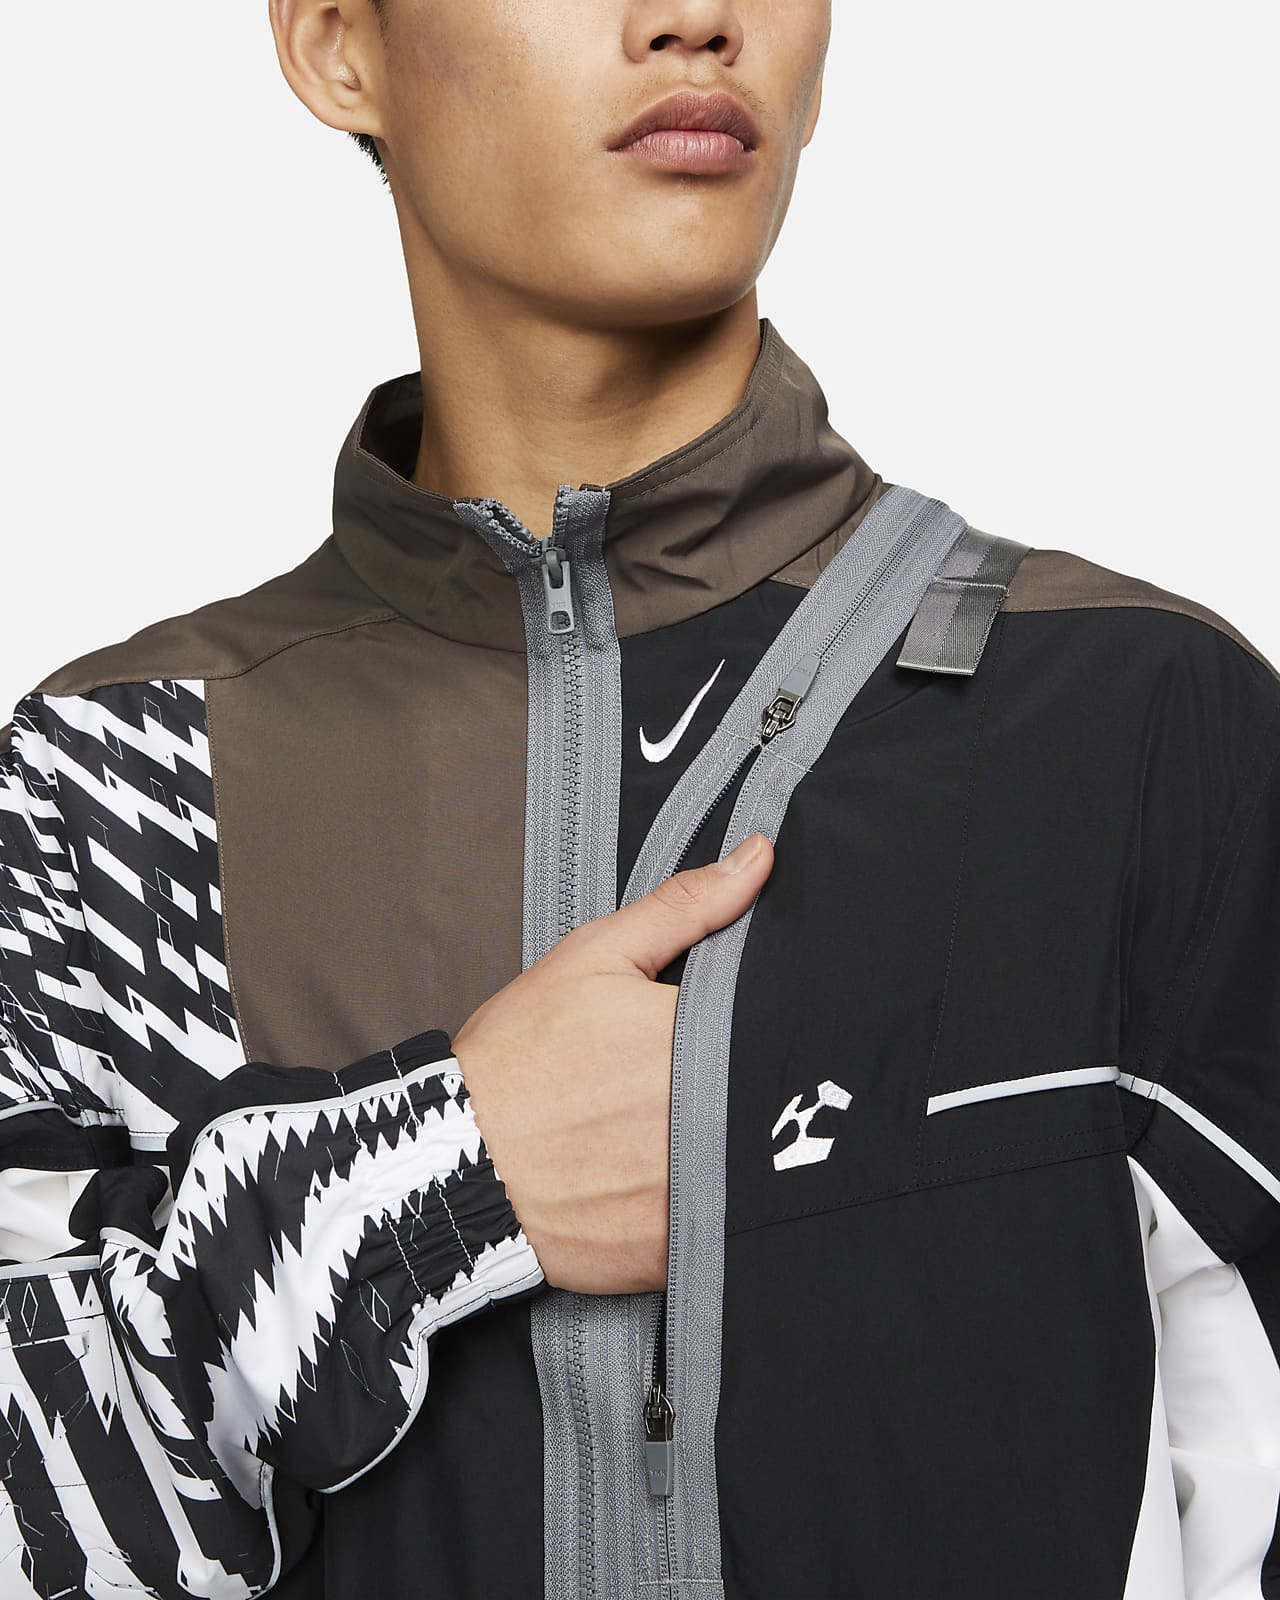 8,599円Nike x ACRONYM® MEN'S WOVEN JACKET Multi